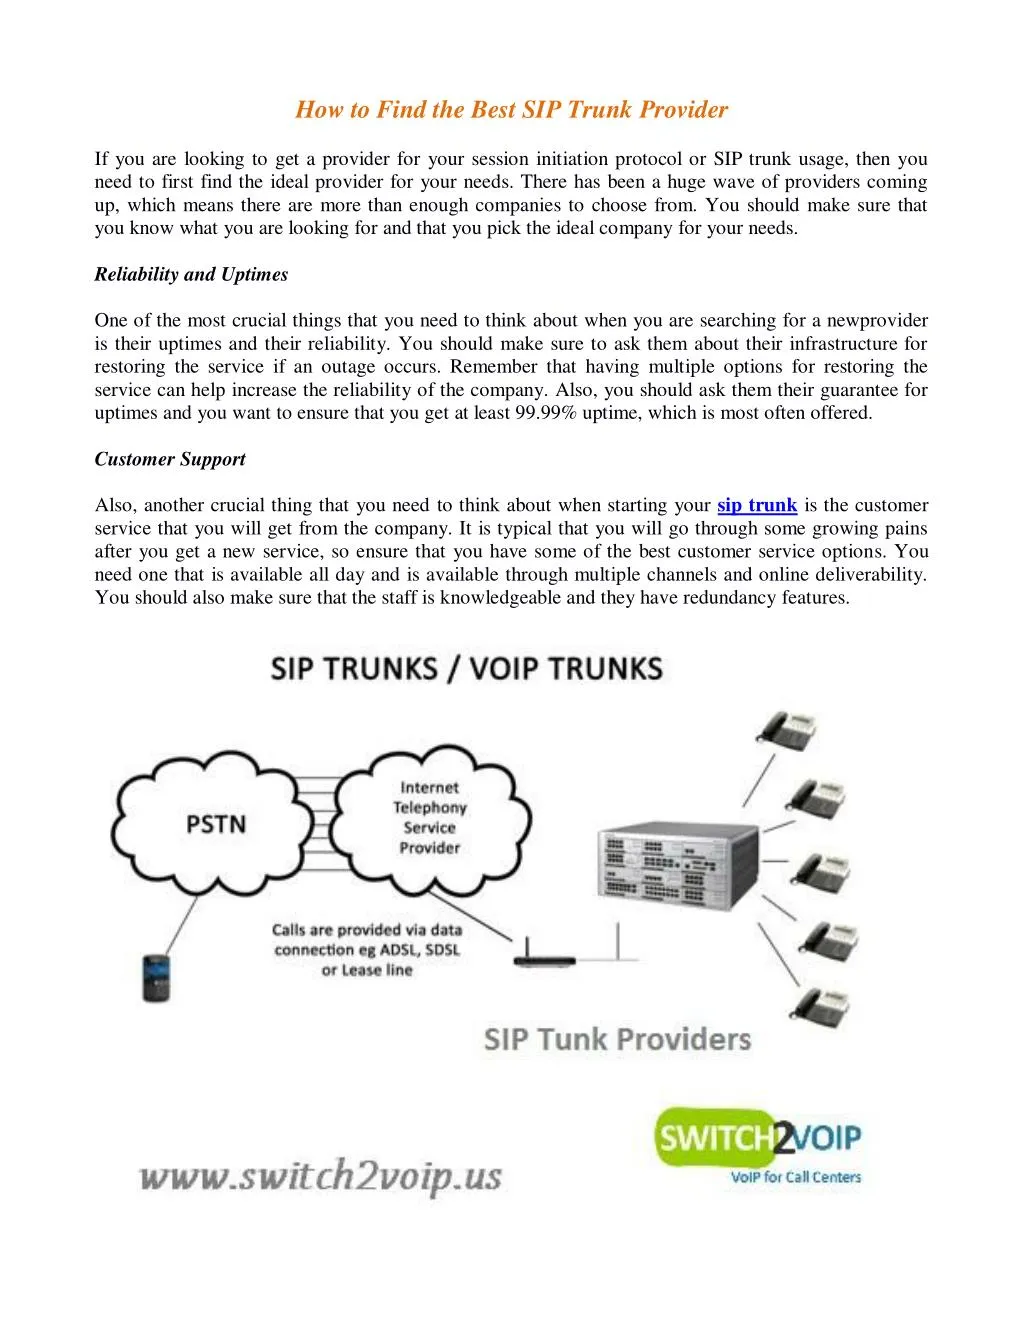 https://cdn4.slideserve.com/7506737/how-to-find-the-best-sip-trunk-provider-n.jpg